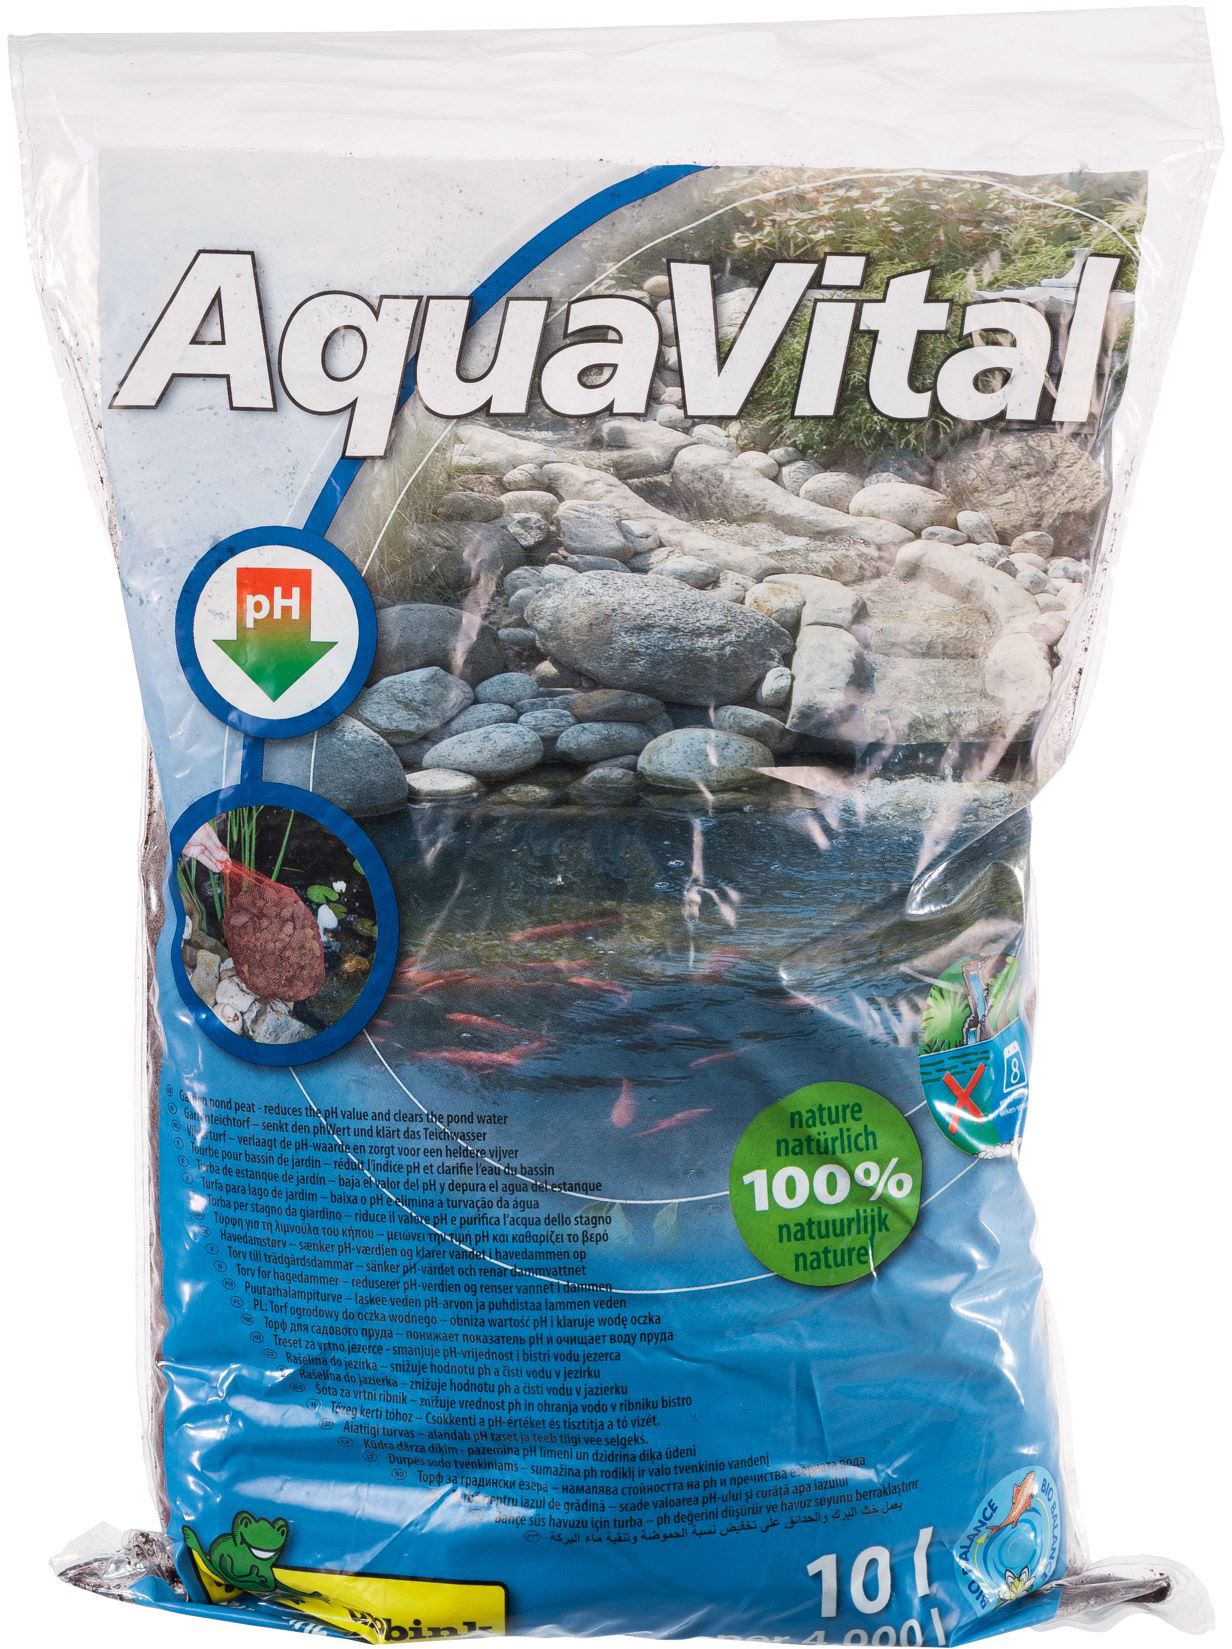 Aqua-Vital-vijverturf-om-de-pH-waarde-van-de-vijver-te-verlagen-en-de-groei-van-algen-te-stoppen-10-